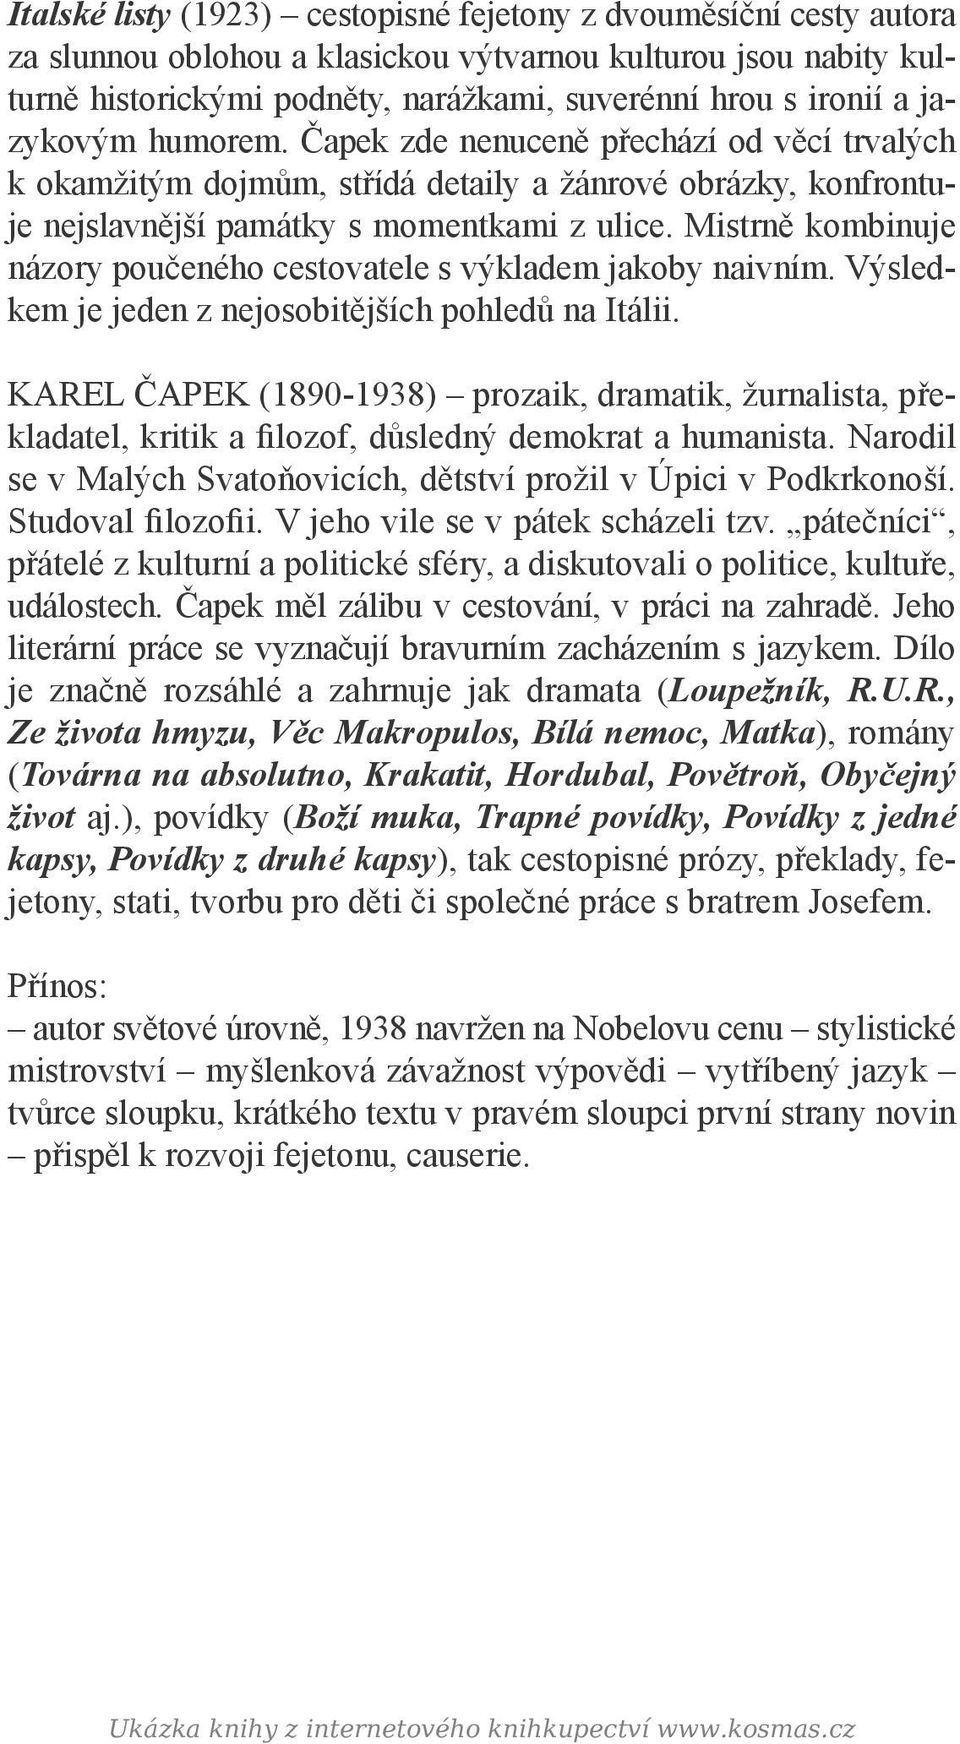 školní četba Karel Čapek ITALSKÉ LISTY - PDF Stažení zdarma